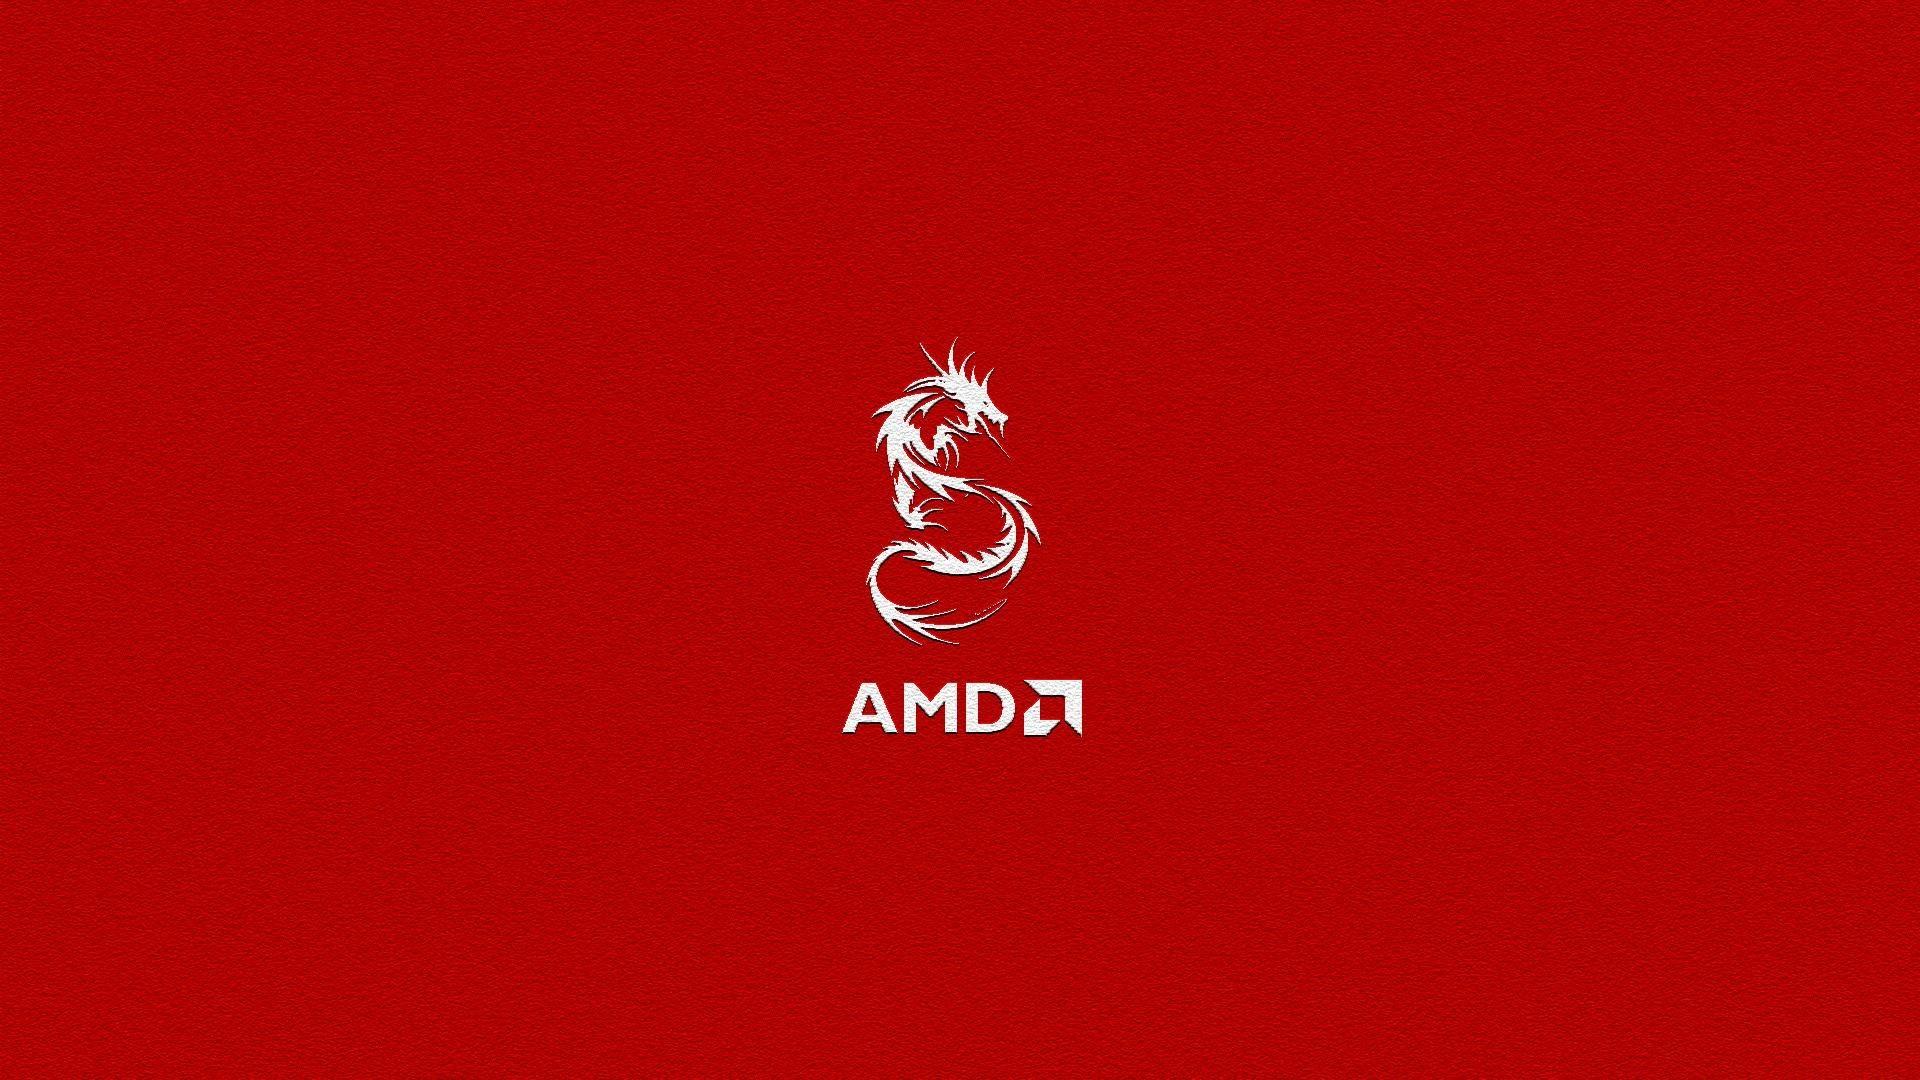 AMD 4K Wallpaper